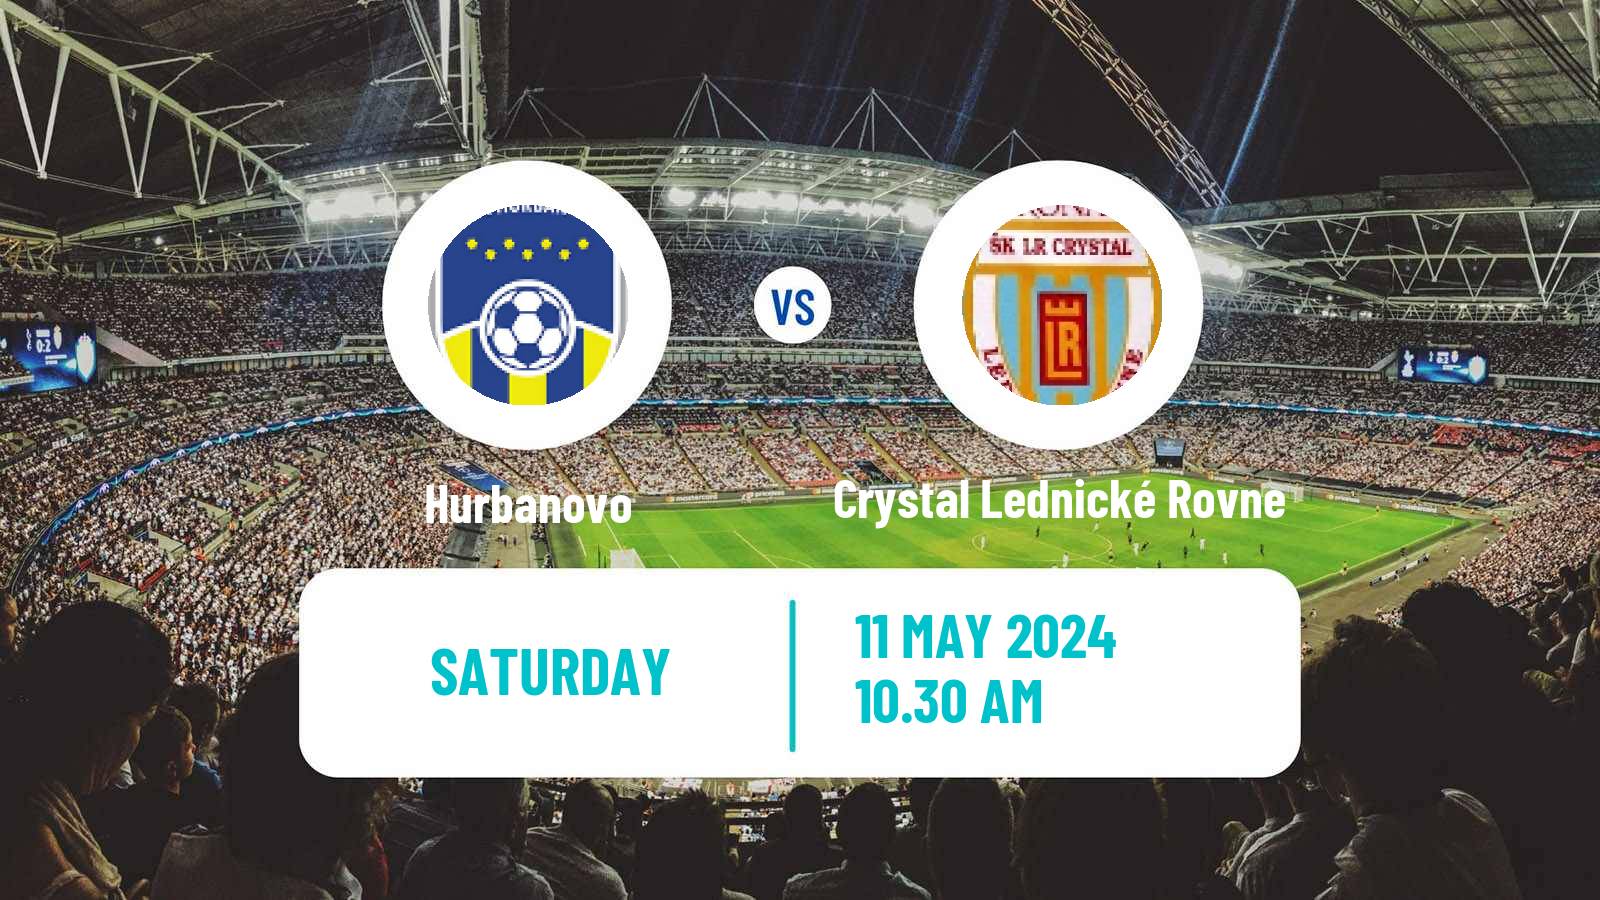 Soccer Slovak 4 Liga West Hurbanovo - Crystal Lednické Rovne